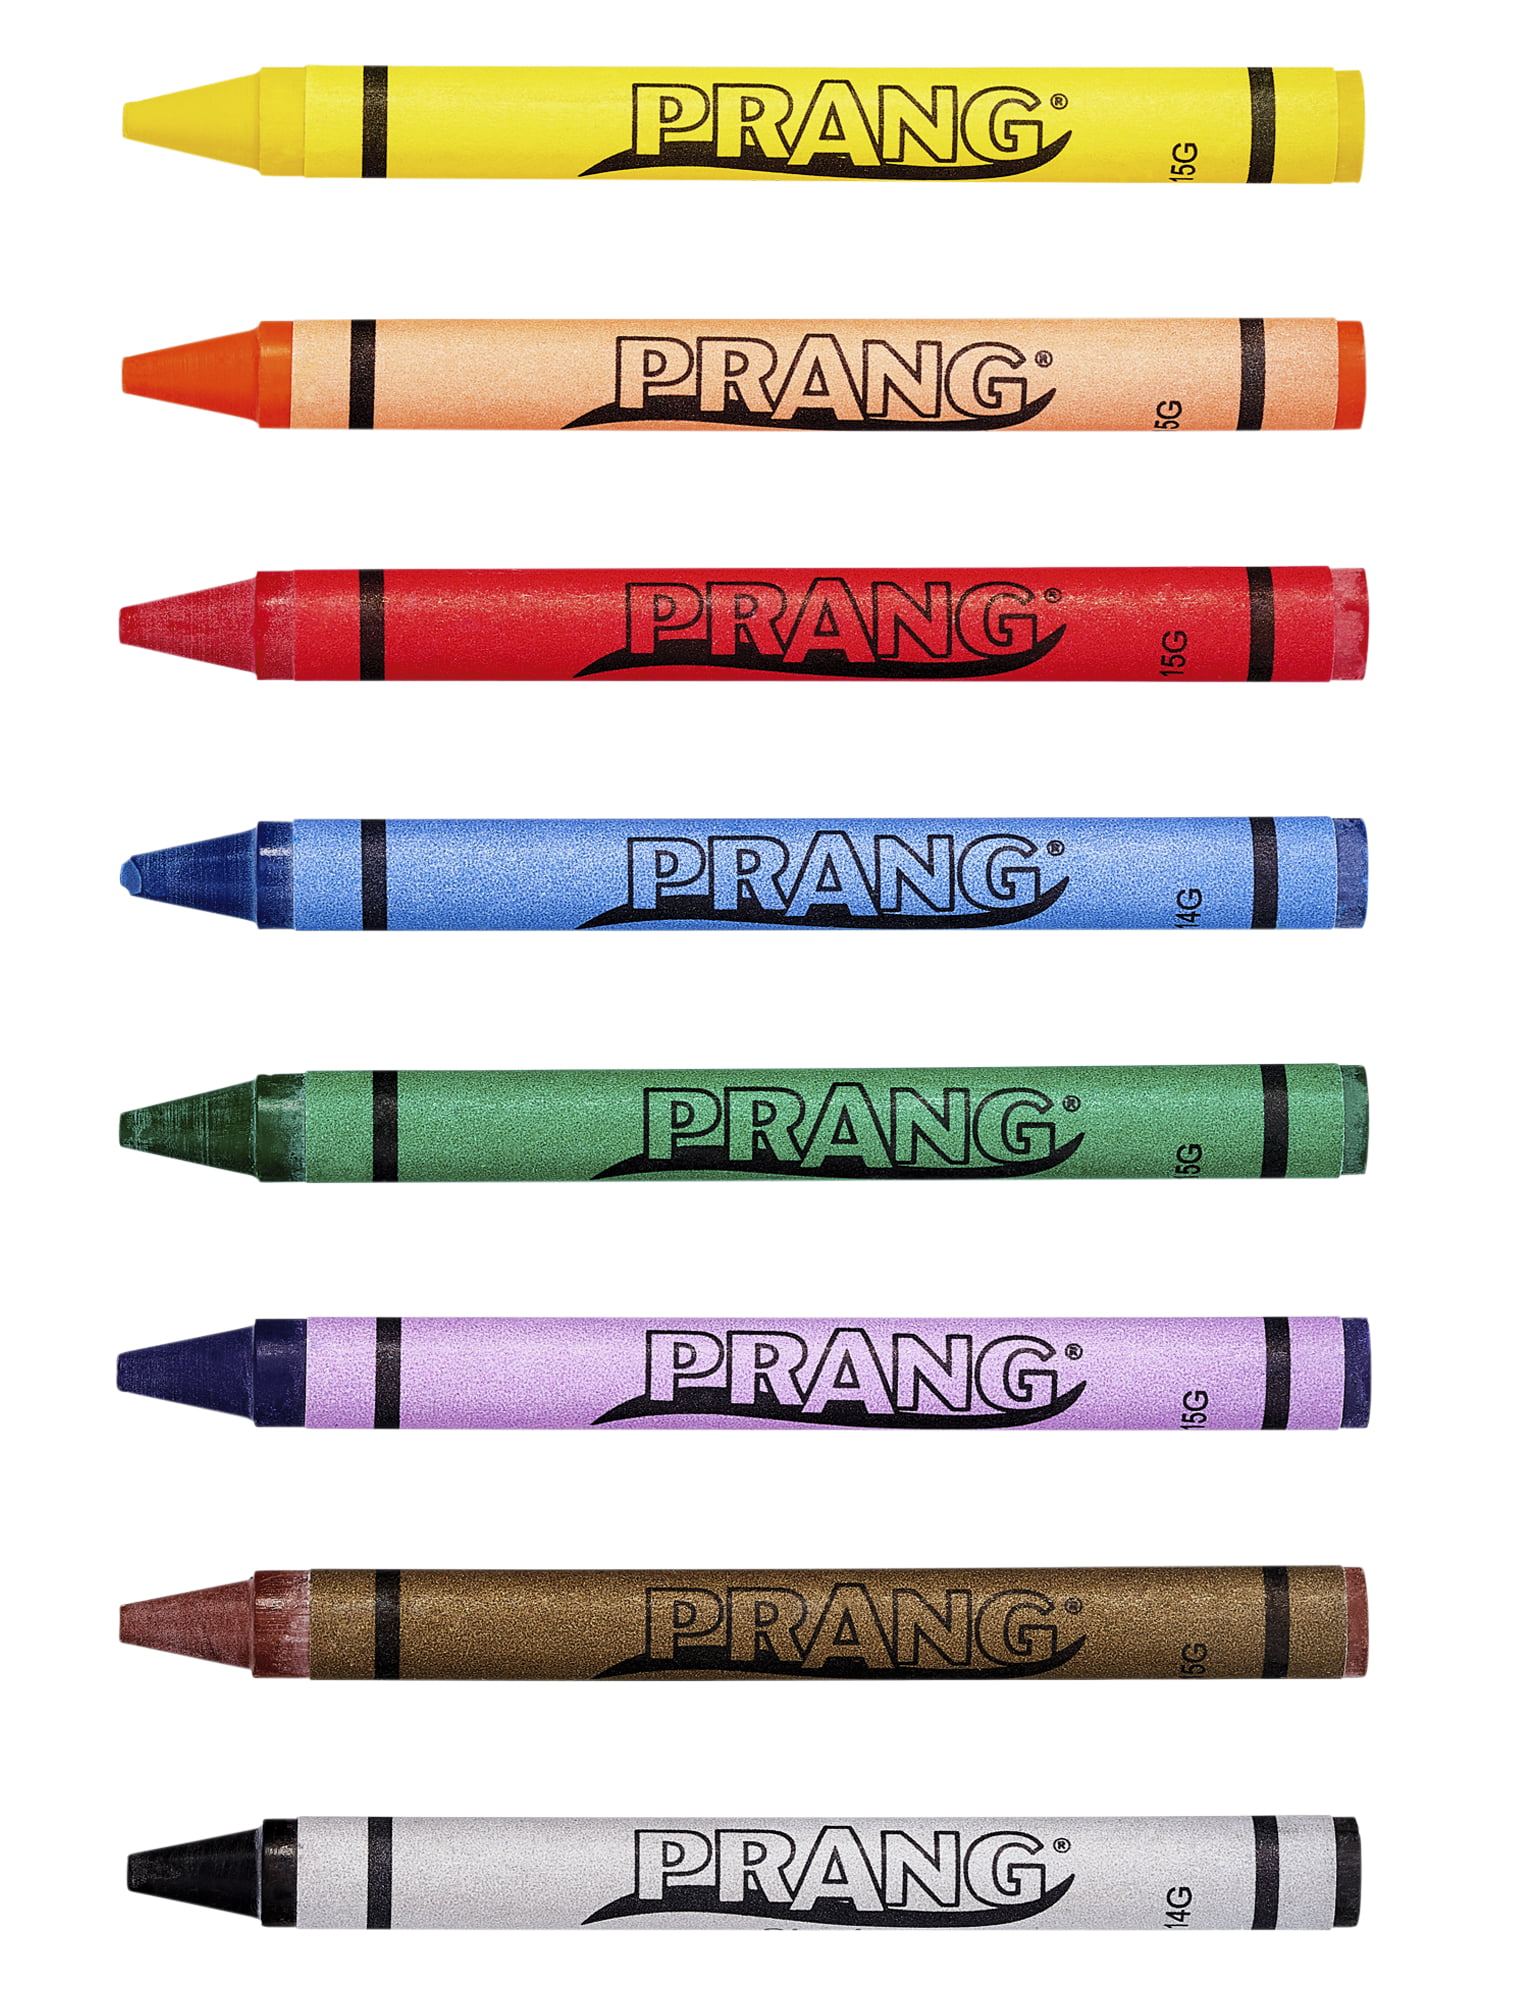 7609円 定番の冬ギフト 送料無料 Crayola クレヨンクラスパック Lサイズ 400本入り 海外通販 Crayon Classpack Large Size Pack Of 400